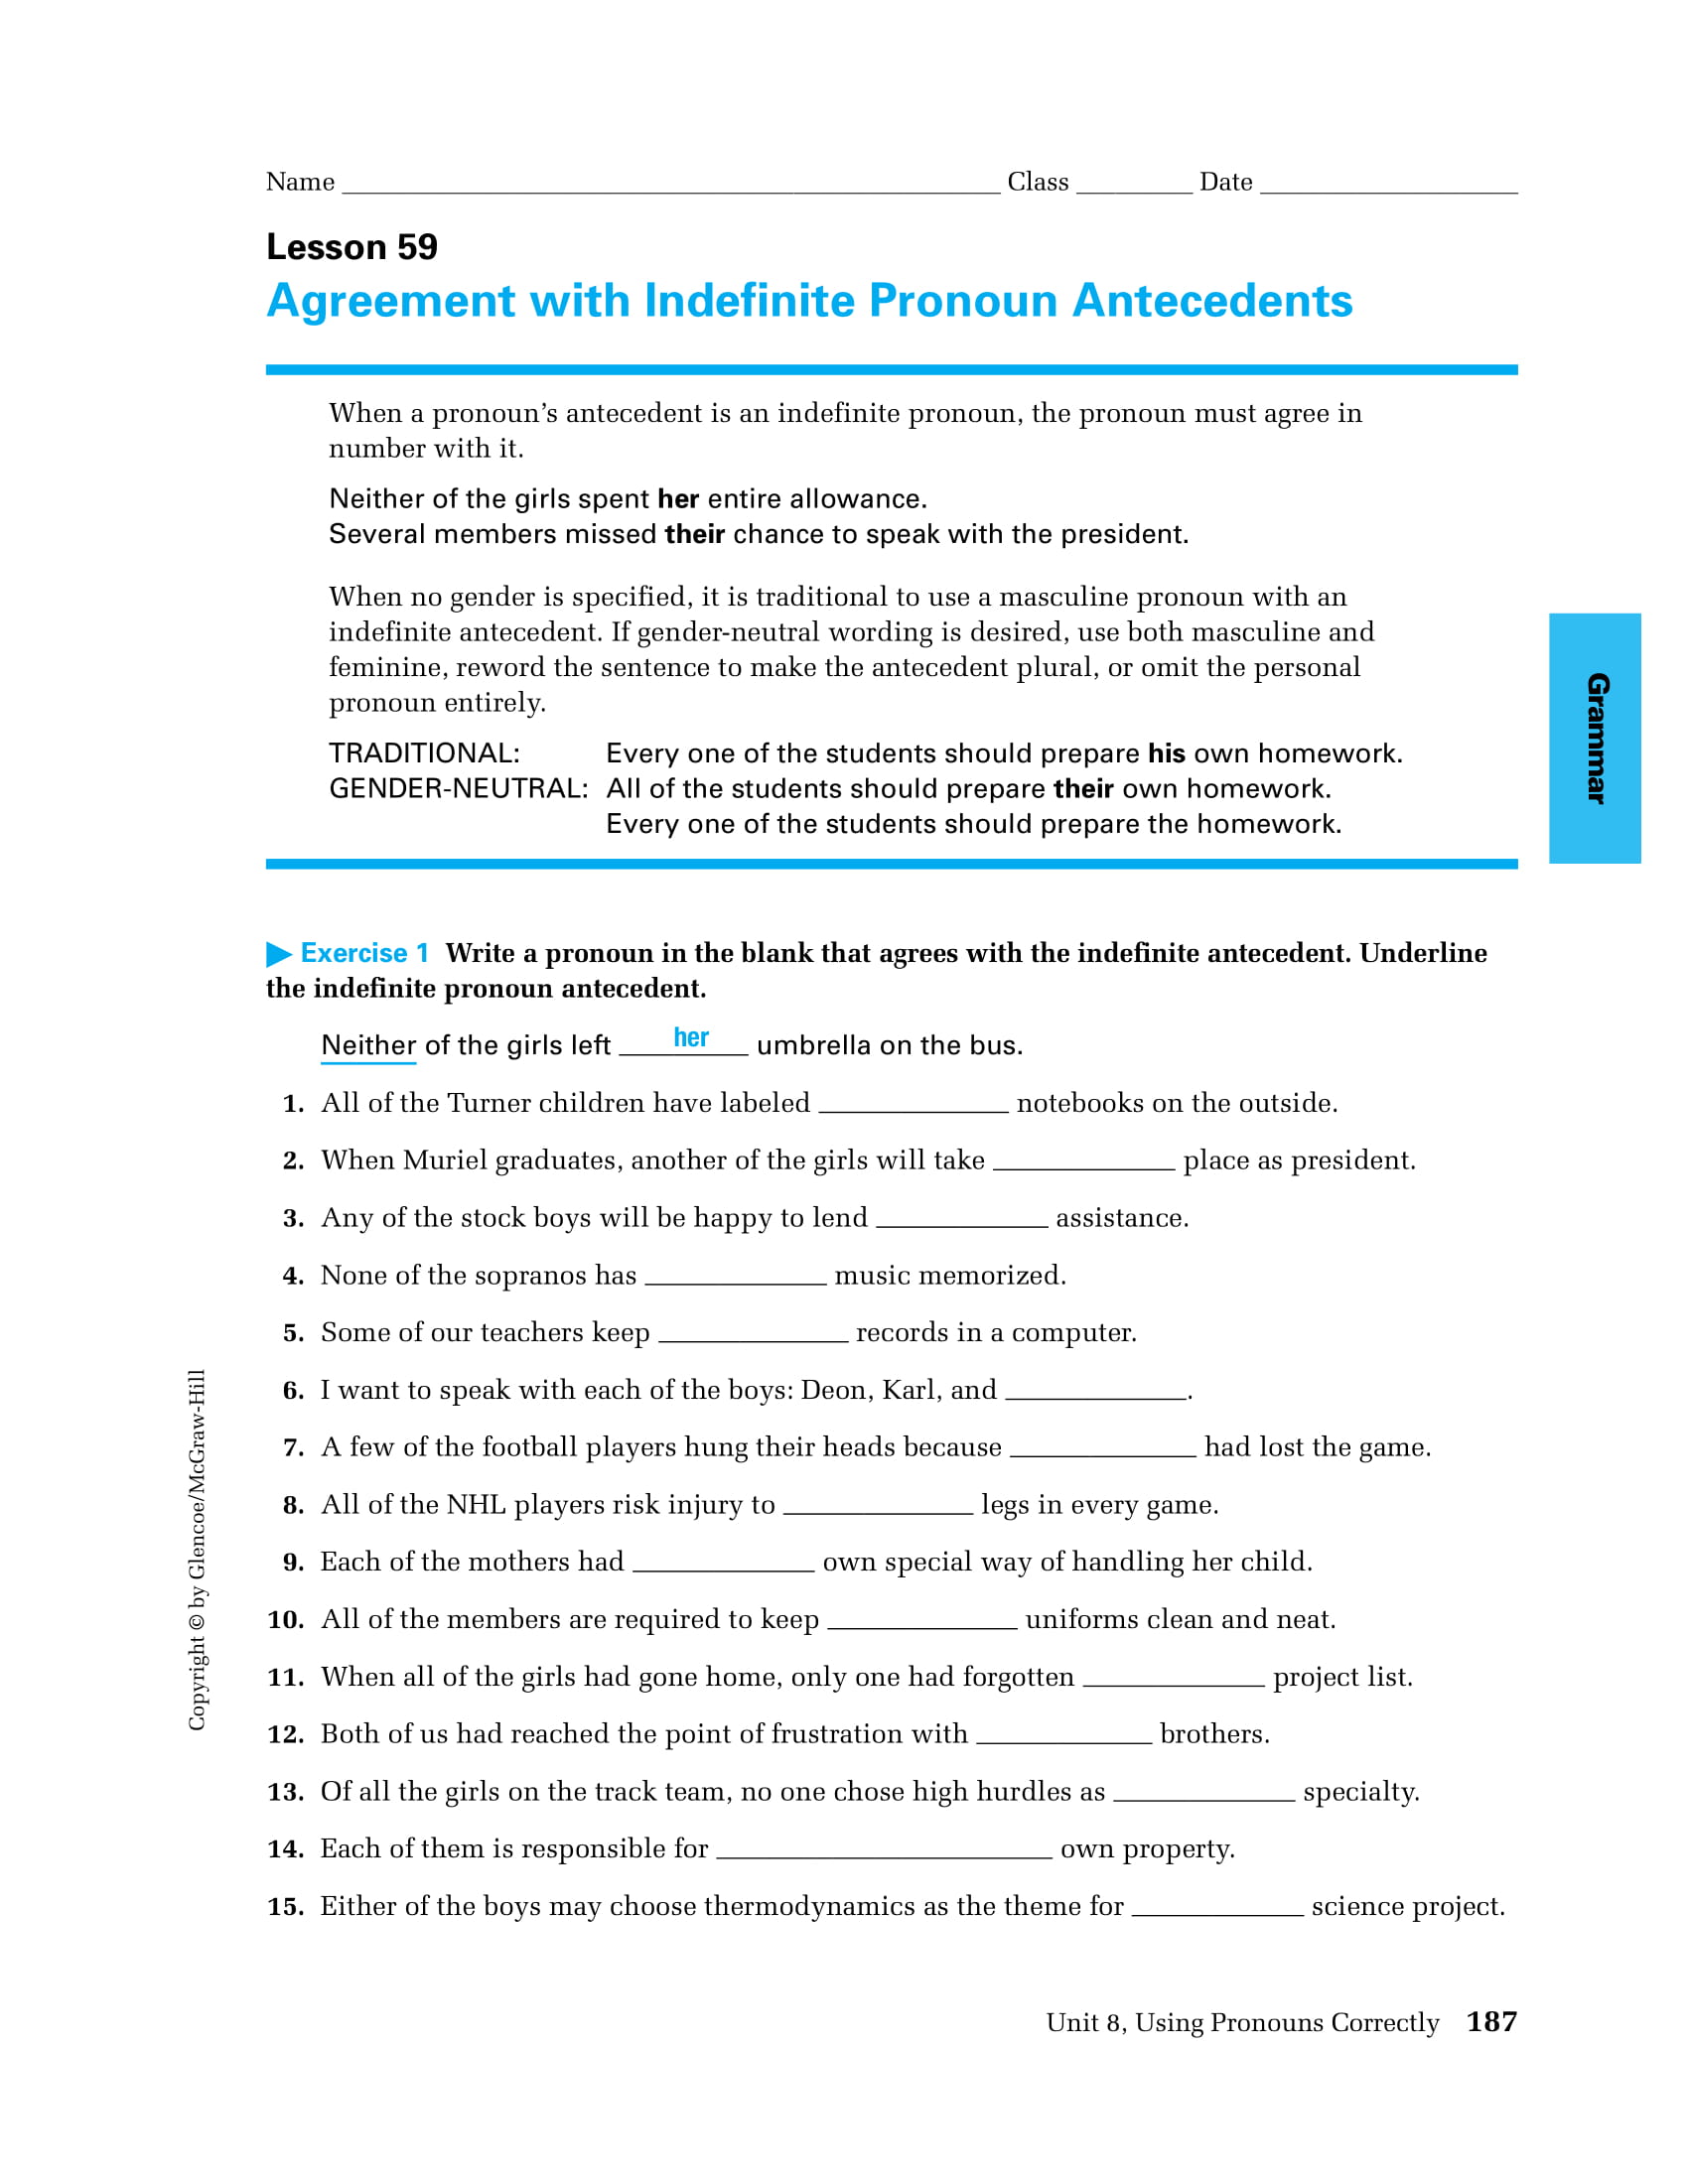 Indefinite Pronoun Agreement Worksheet